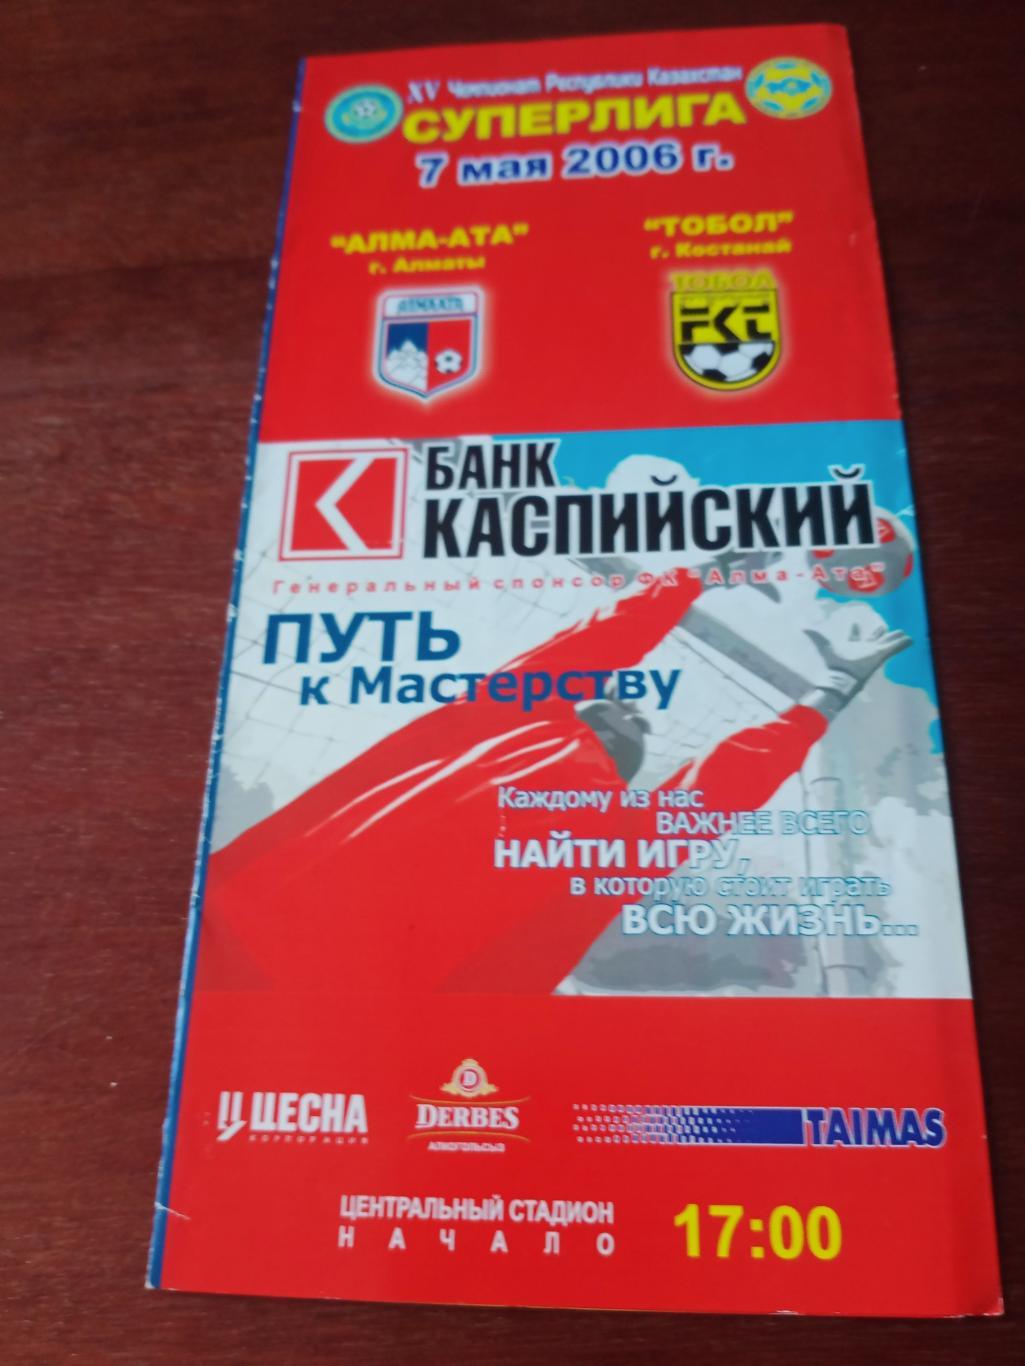 ФК Алма-ата - Тобол Кустанай. 7 мая 2006 год